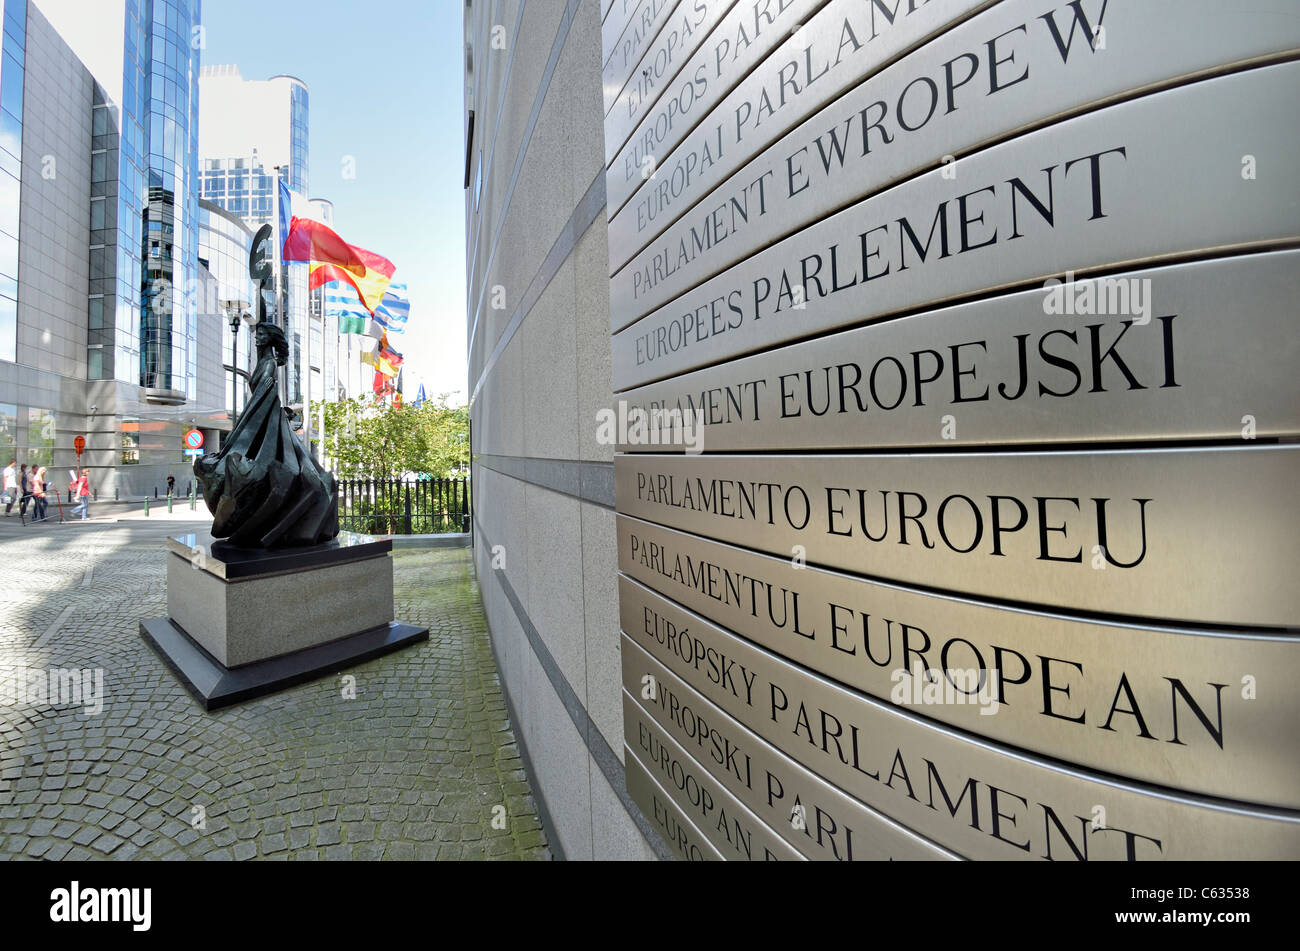 Bruselas / Bruxelles, Bélgica. Edificio del Parlamento Europeo (1993) multilingüe sign - "Parlamento Europeo" en todos los idiomas. Foto de stock